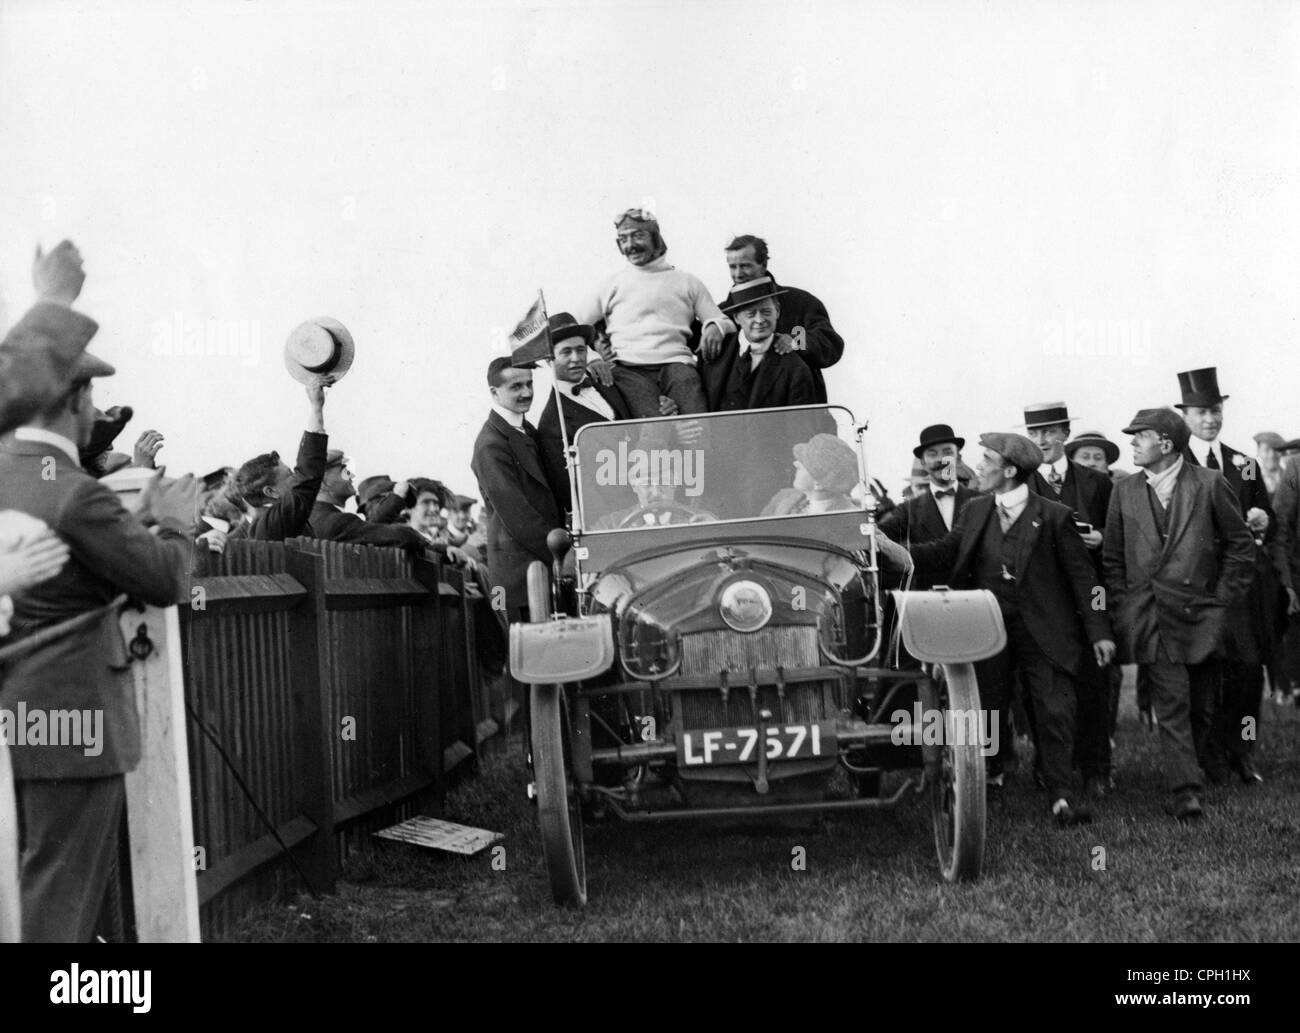 Pegoud, Adolphe, 13.6.1889 - 31.8.1915, französischer Flieger, wird von Fans, Brooklands, Surrey, England, 1913, bejubelt. Stockfoto